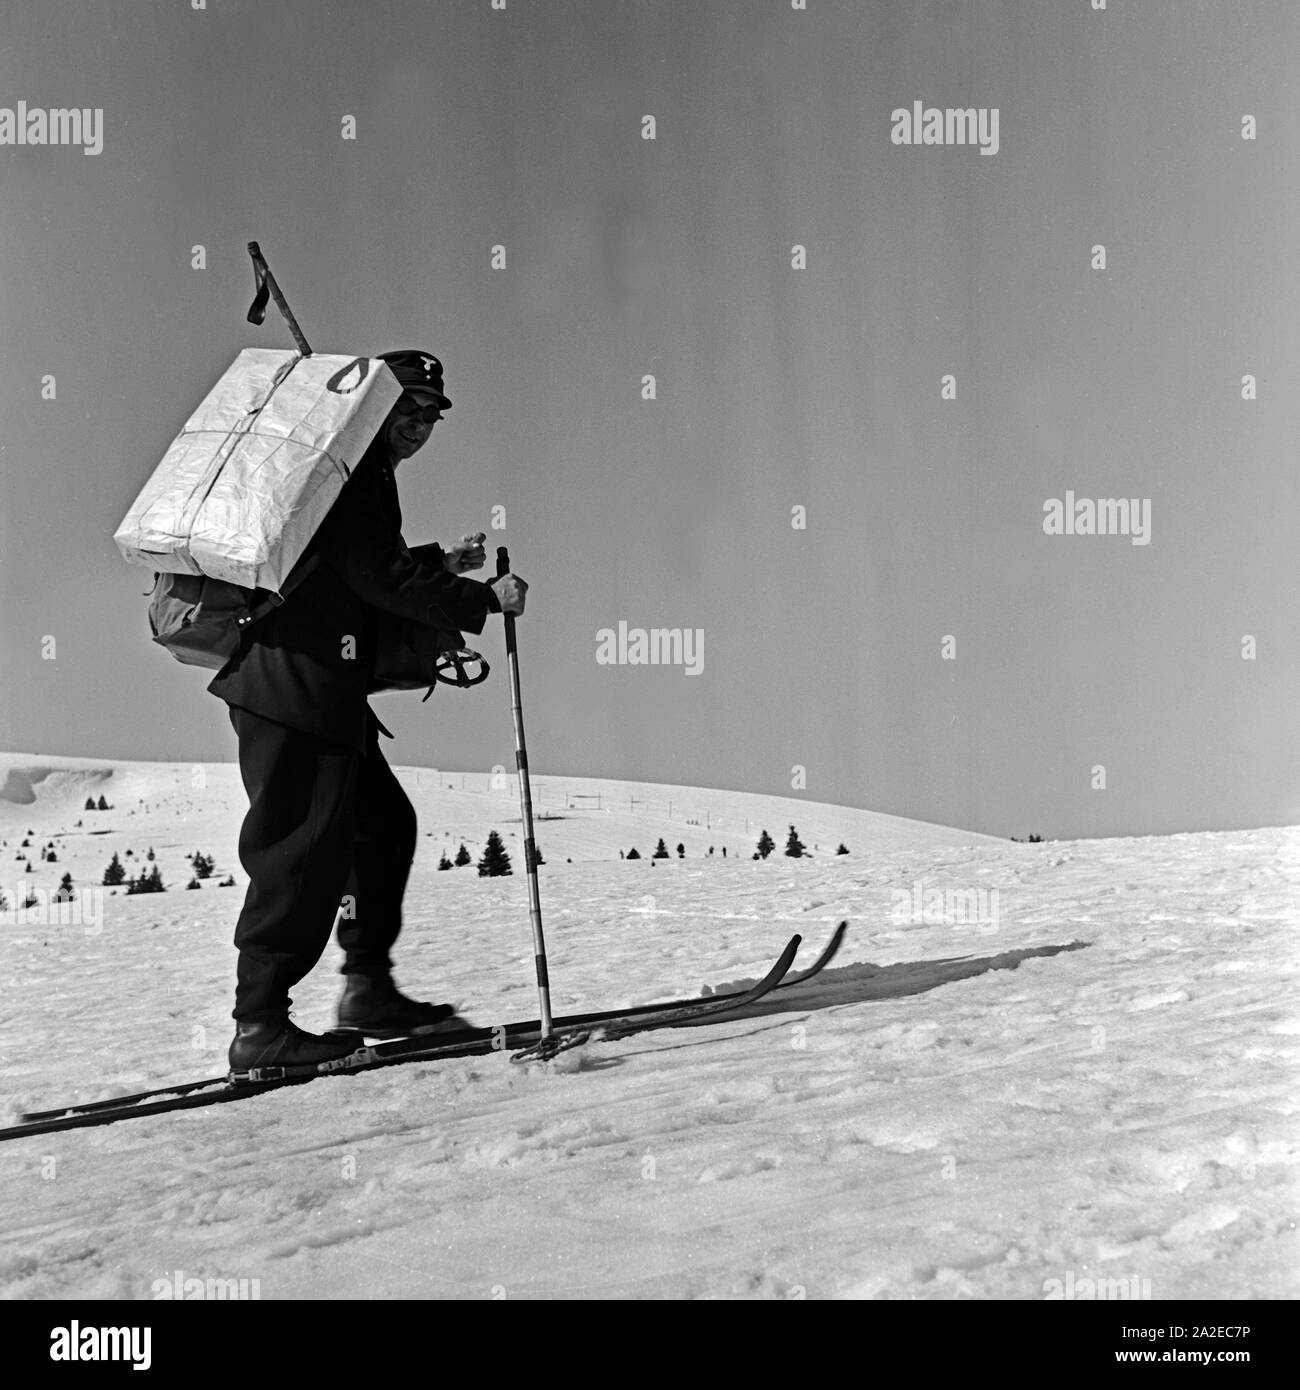 Im tief verschneiten Feldberggebiet kommt der Briefträger auf Skiern, Deutschland 1930er Jahre. In the deeply snowed in Feldberg area even the postman uses ski, Germany 1930s. Stock Photo